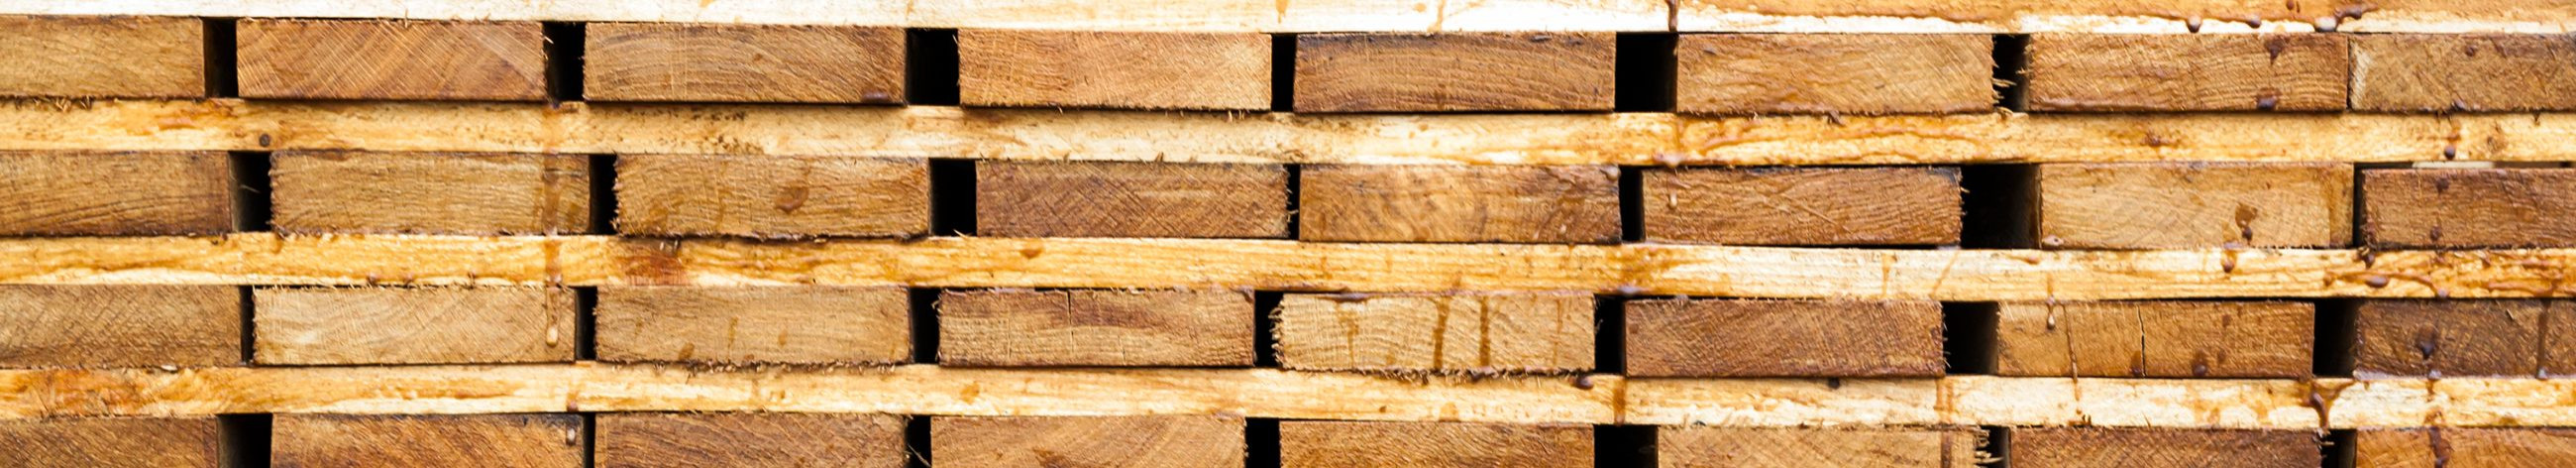 Tegeleme puidust kaubaaluste tootmise ja müügiga ning pakume ka kaubaaluste rentimist, remonti ja kuumtöötlusteenuseid